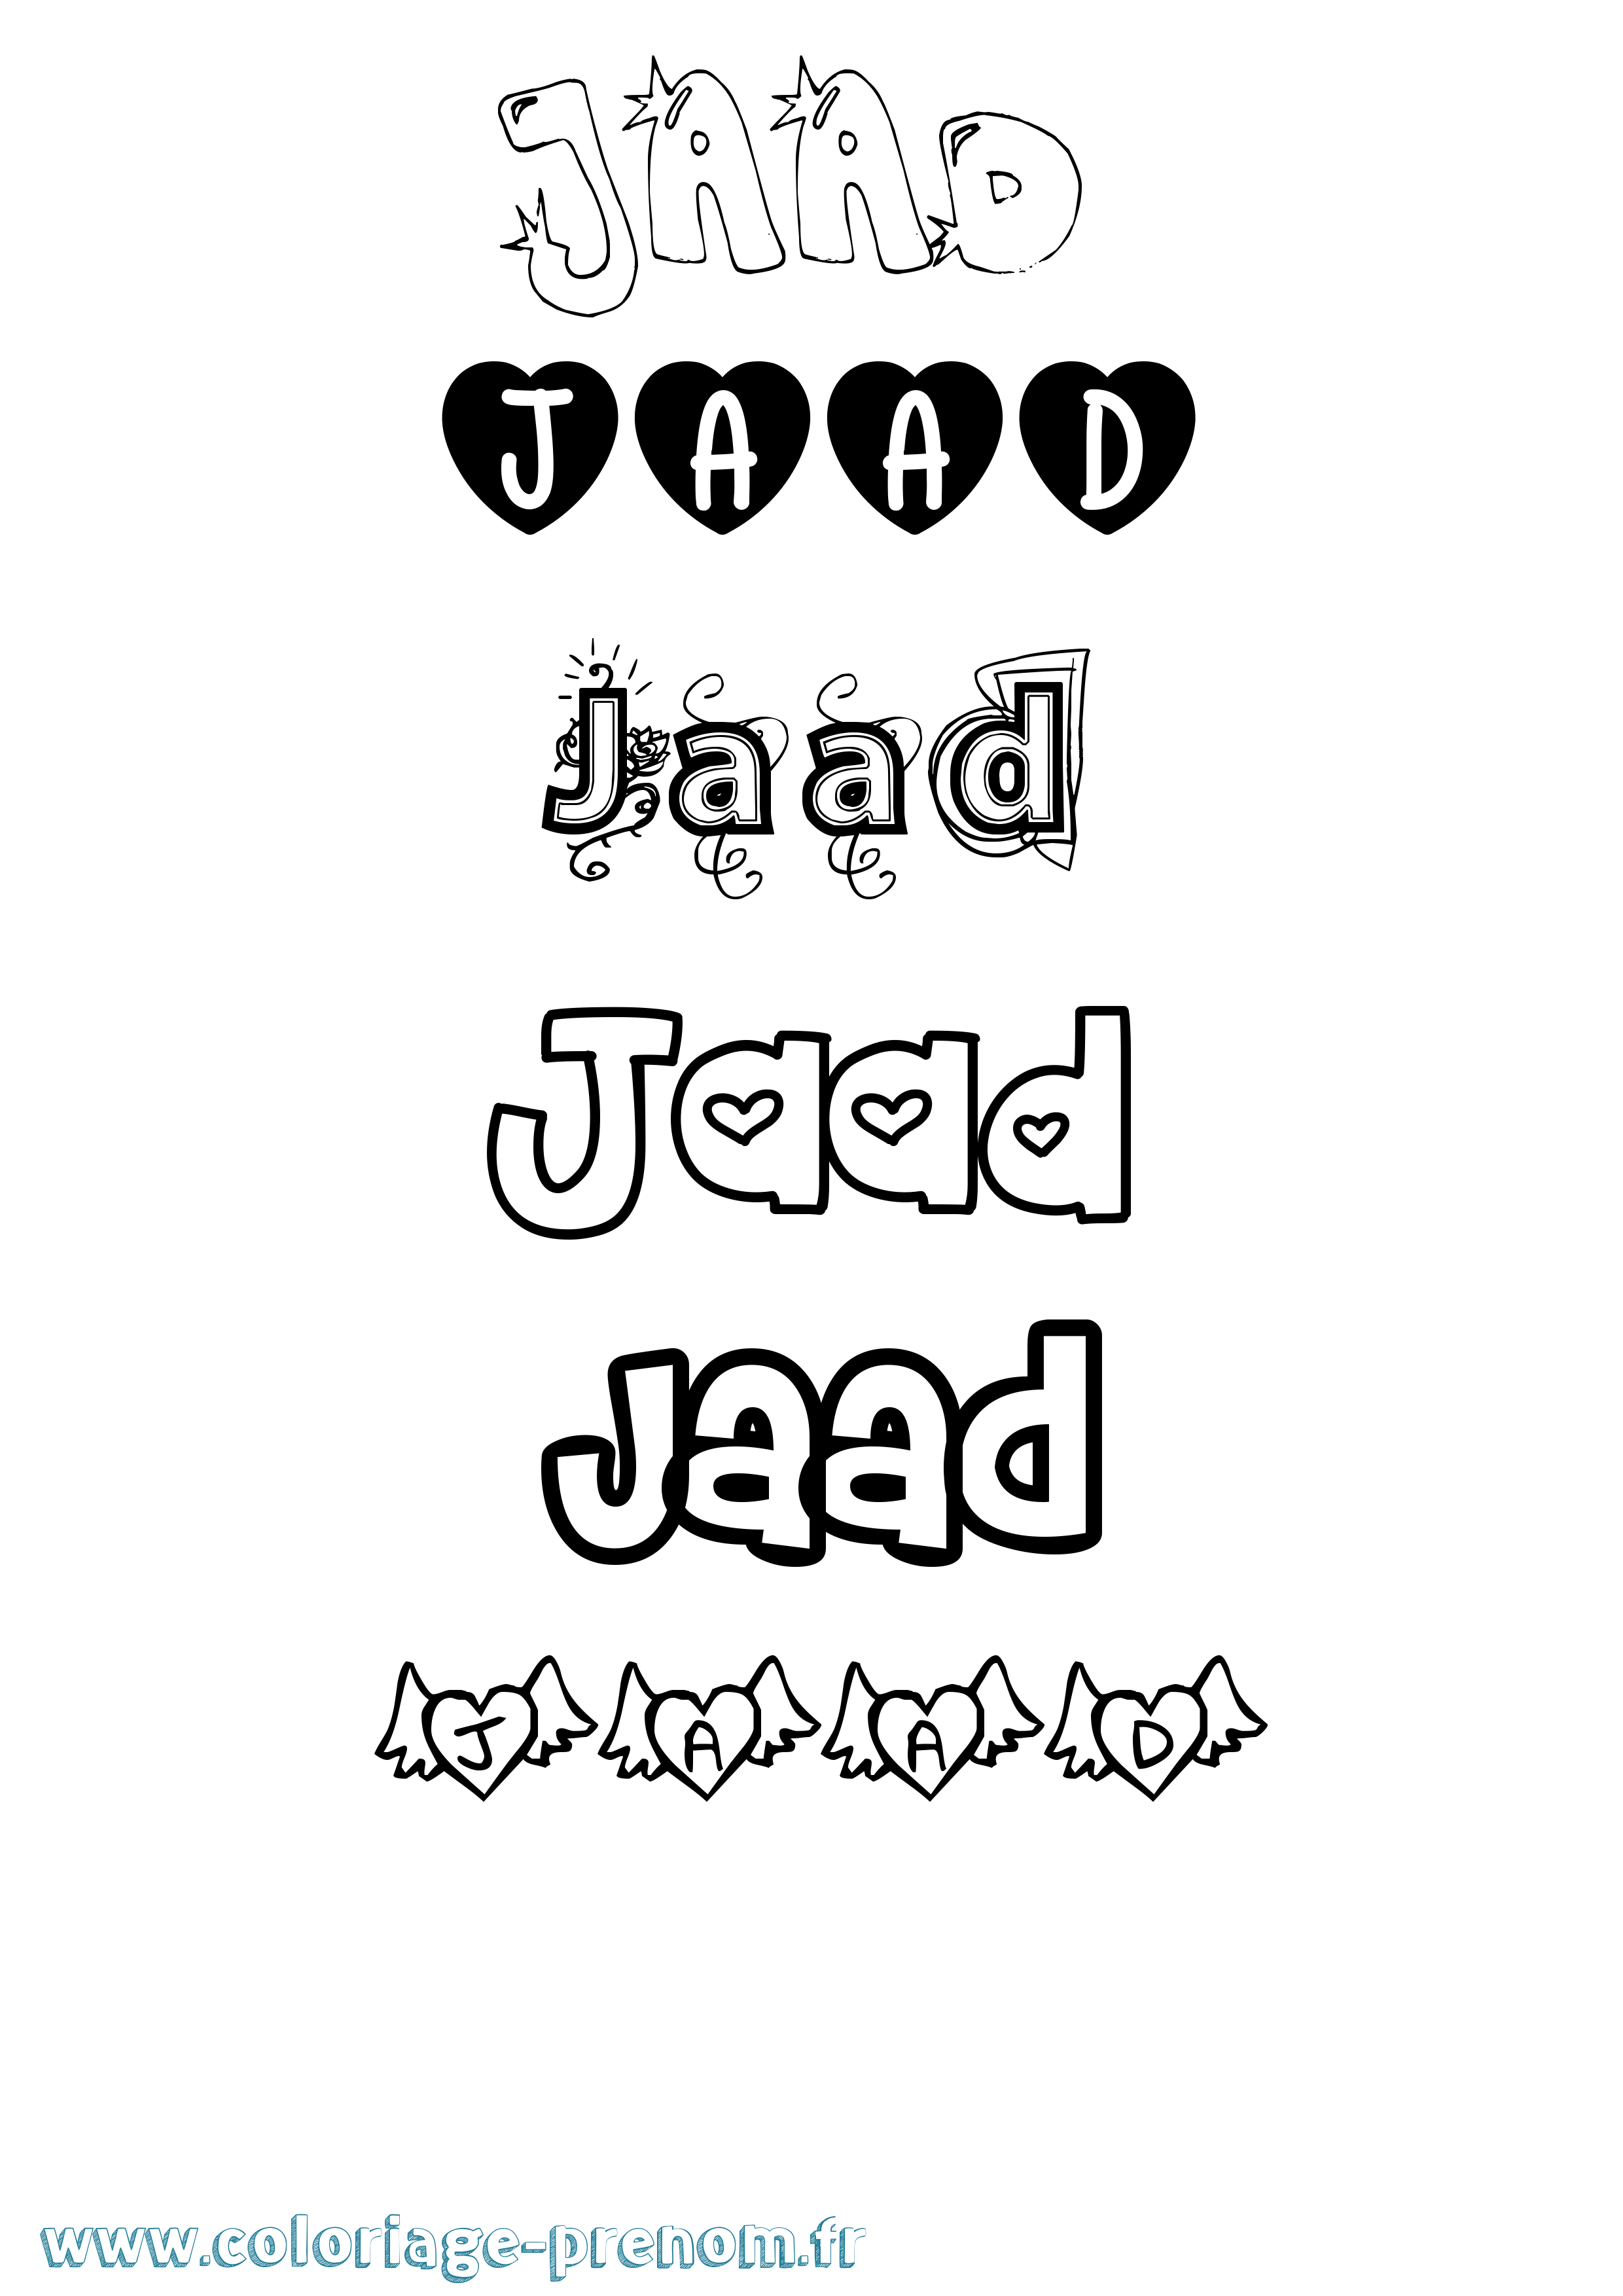 Coloriage prénom Jaad Girly